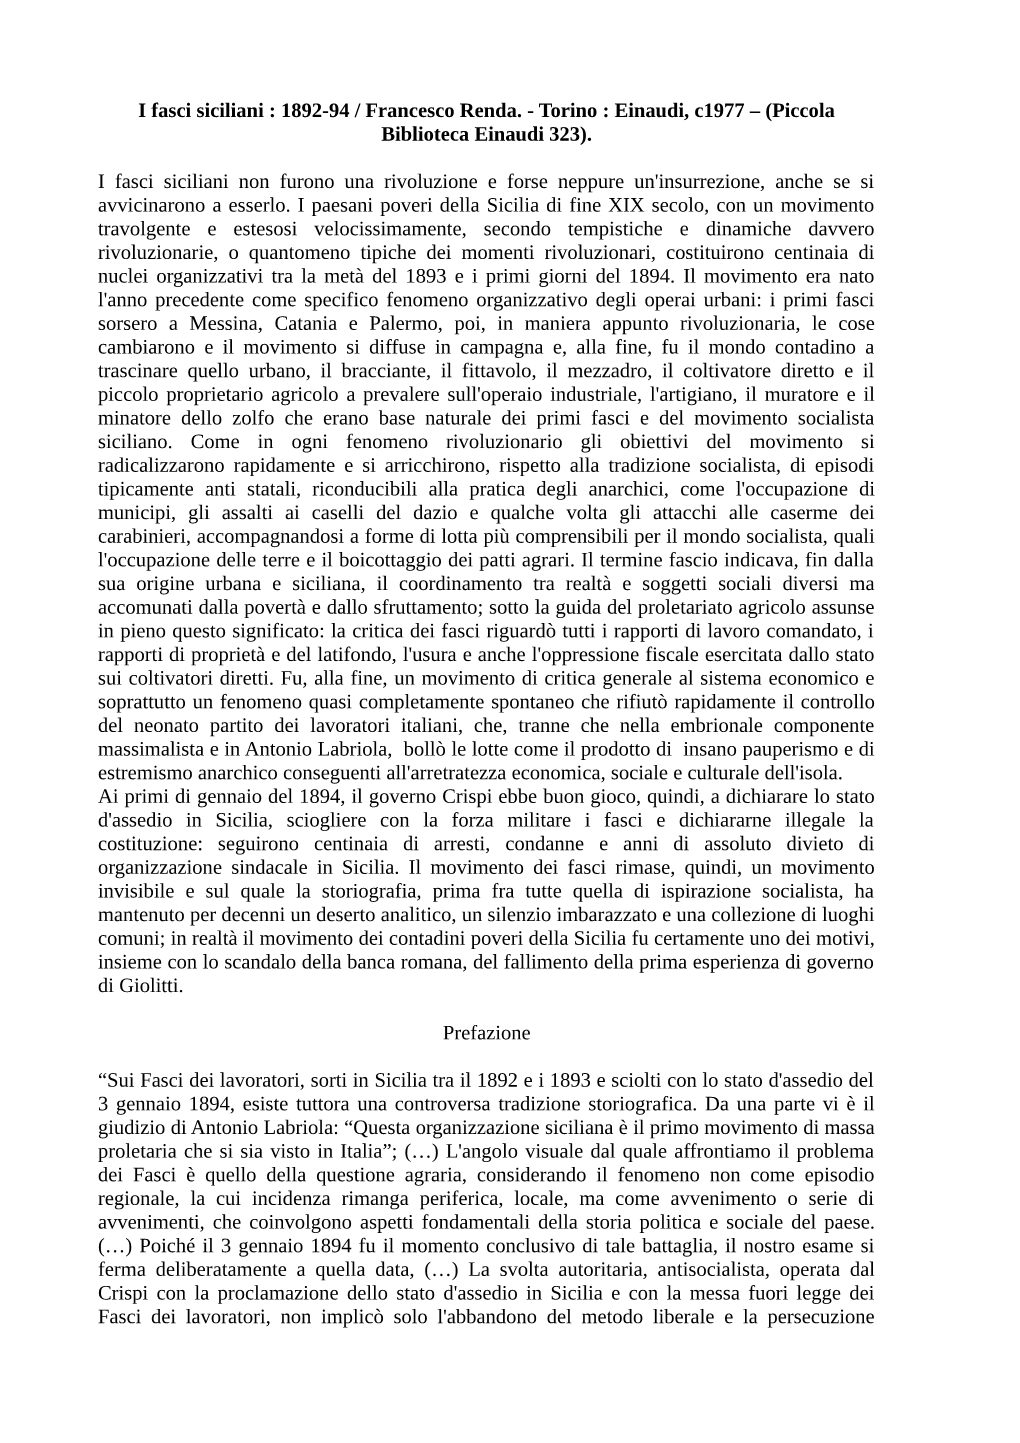 I Fasci Siciliani : 1892-94 / Francesco Renda. - Torino : Einaudi, C1977 – (Piccola Biblioteca Einaudi 323)